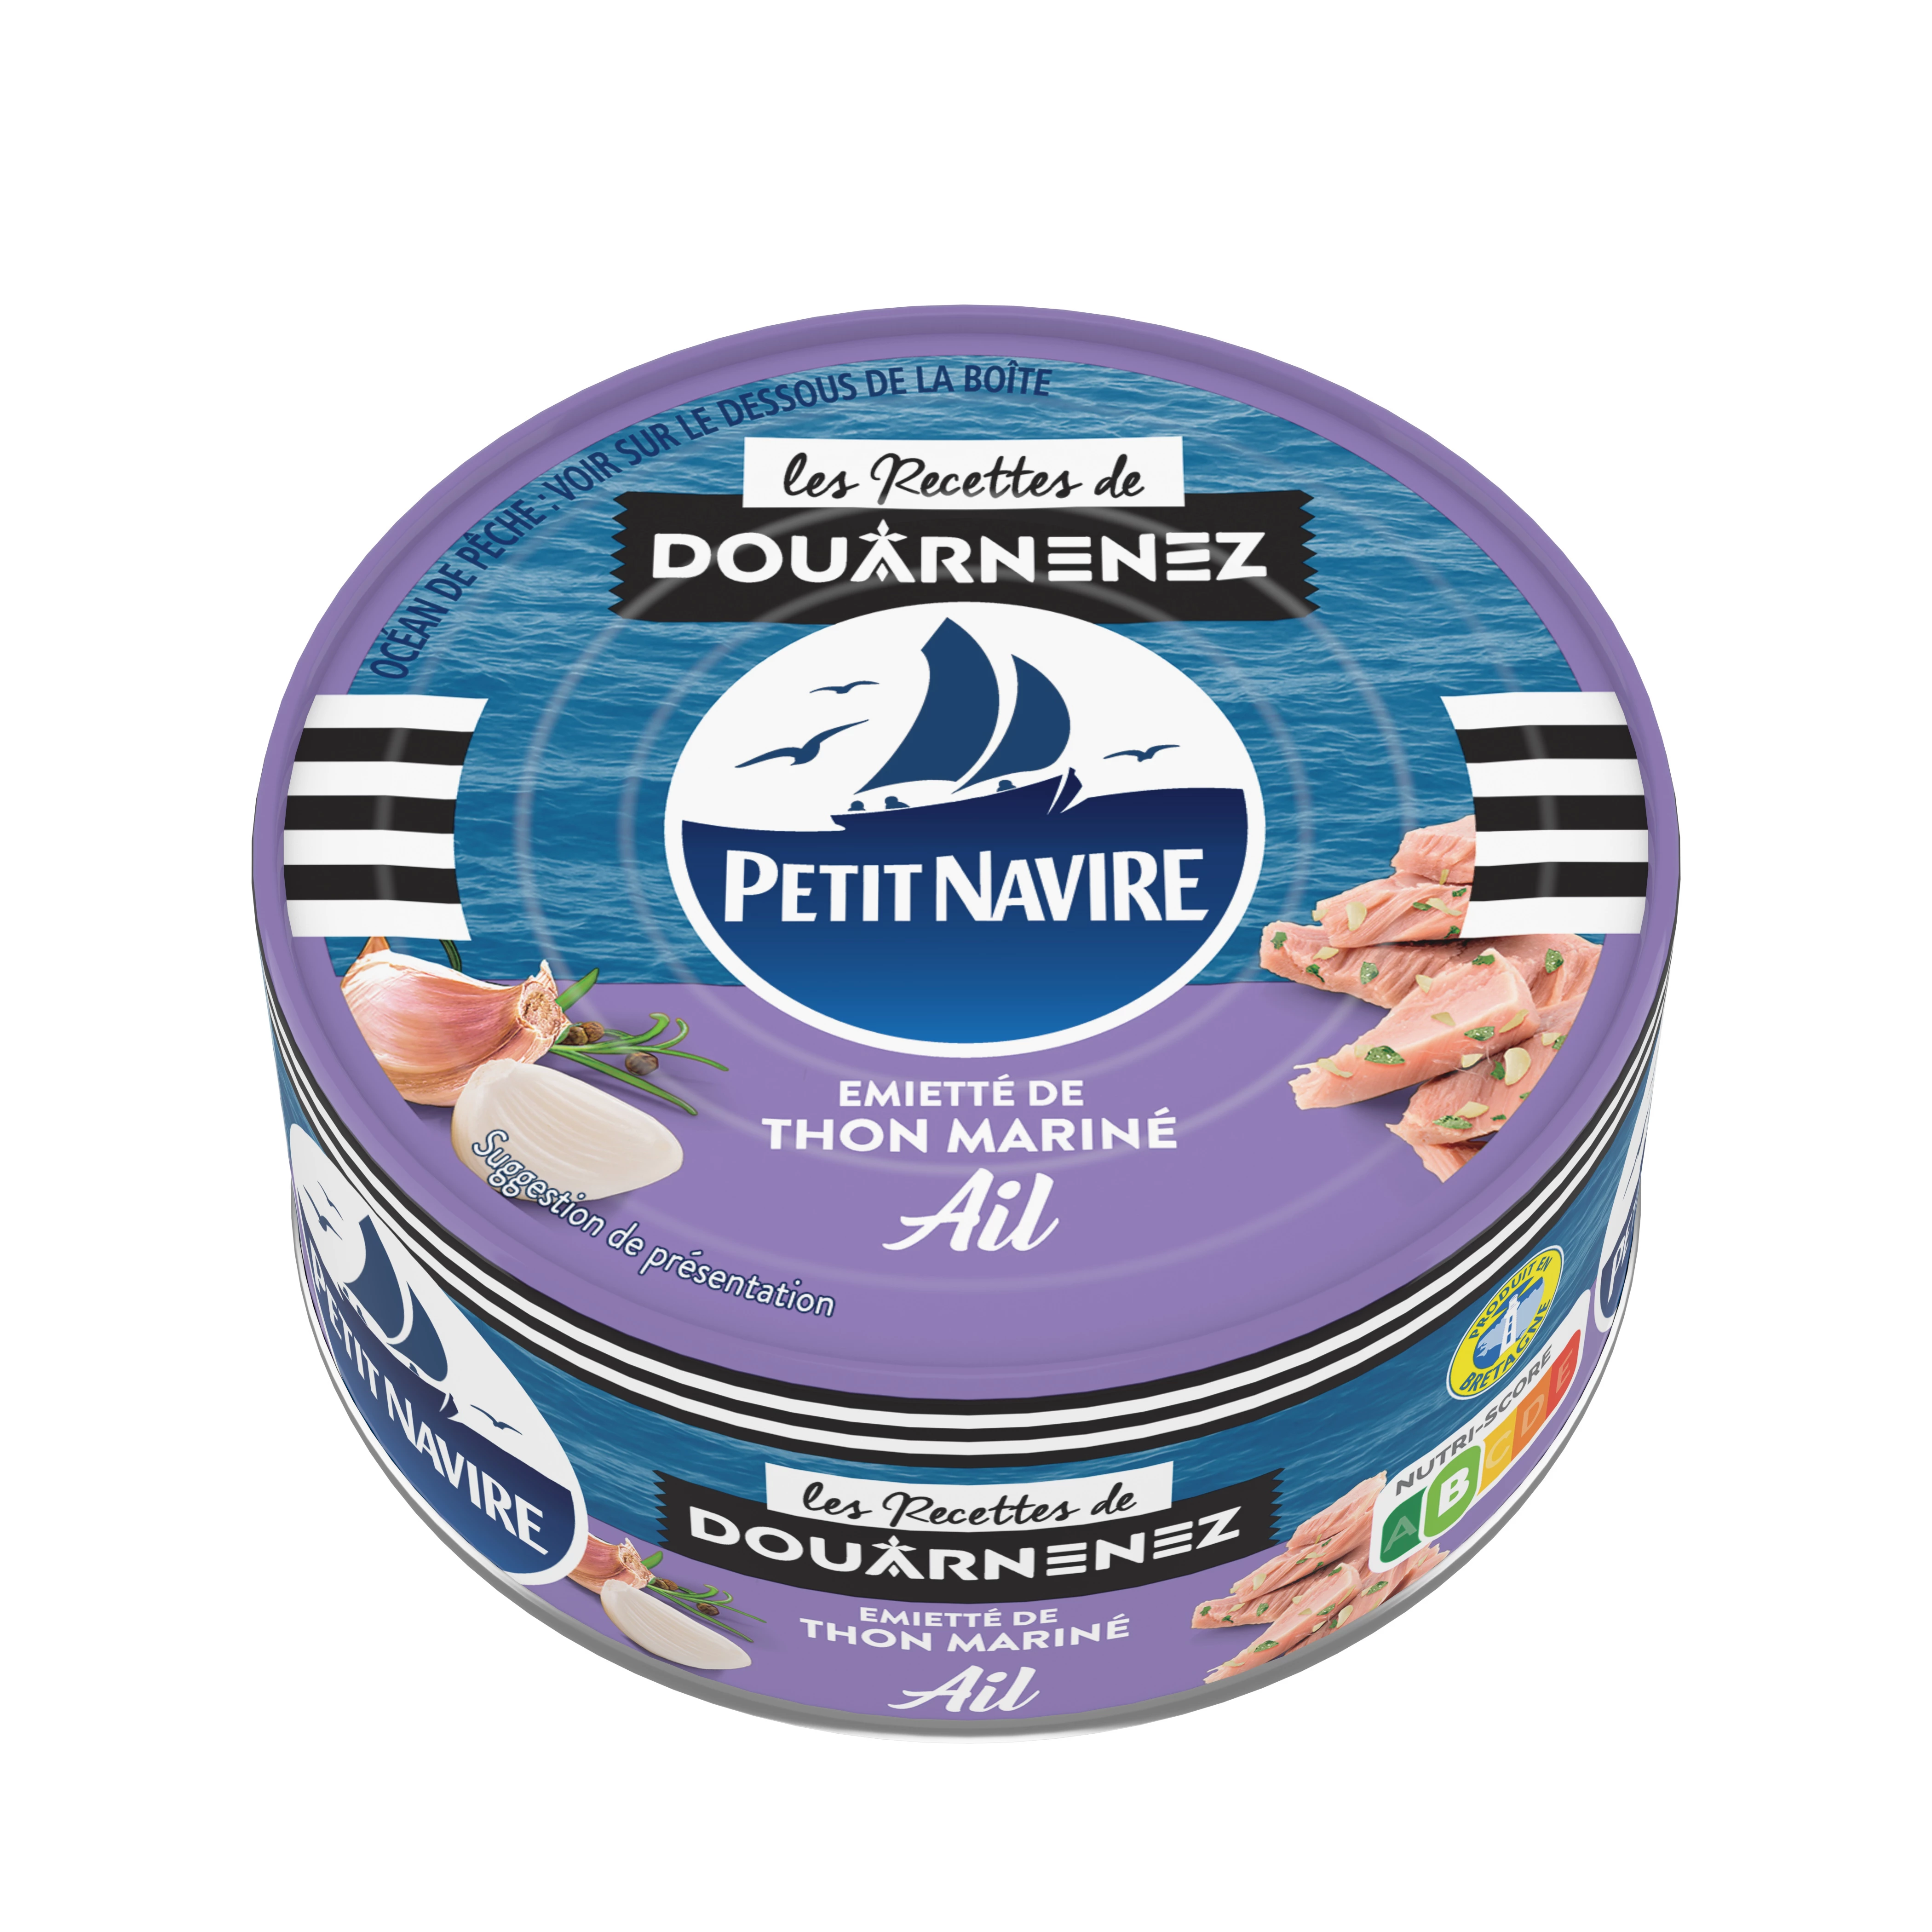 Garlic Marinated Tuna, 110g - PETIT NAVIRE